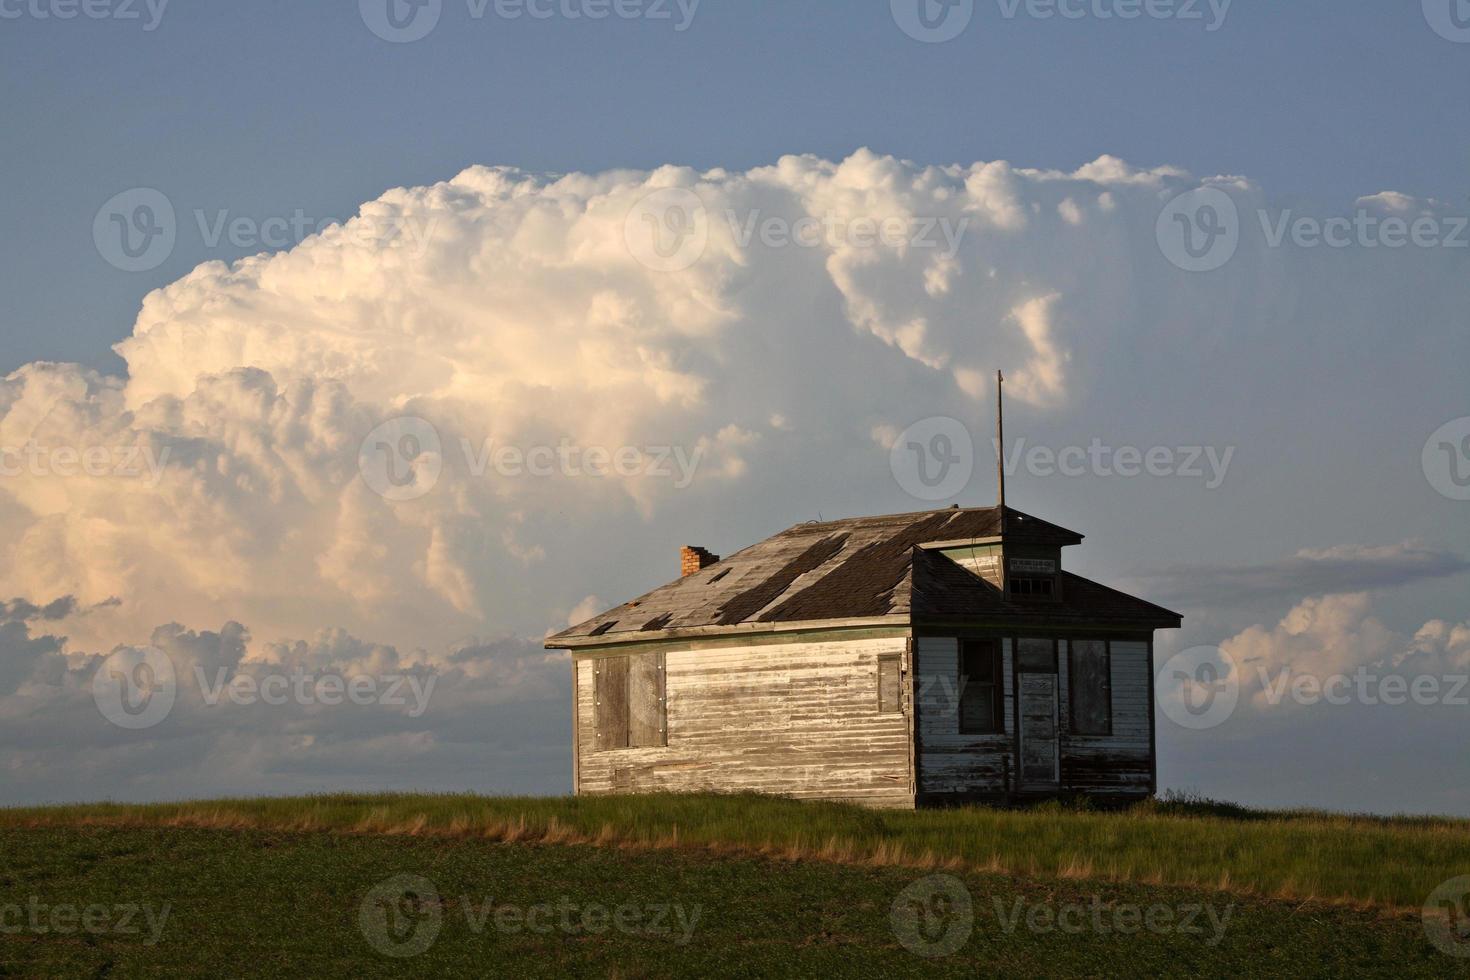 Thunderhead forming over an old Saskatchewan farm house photo